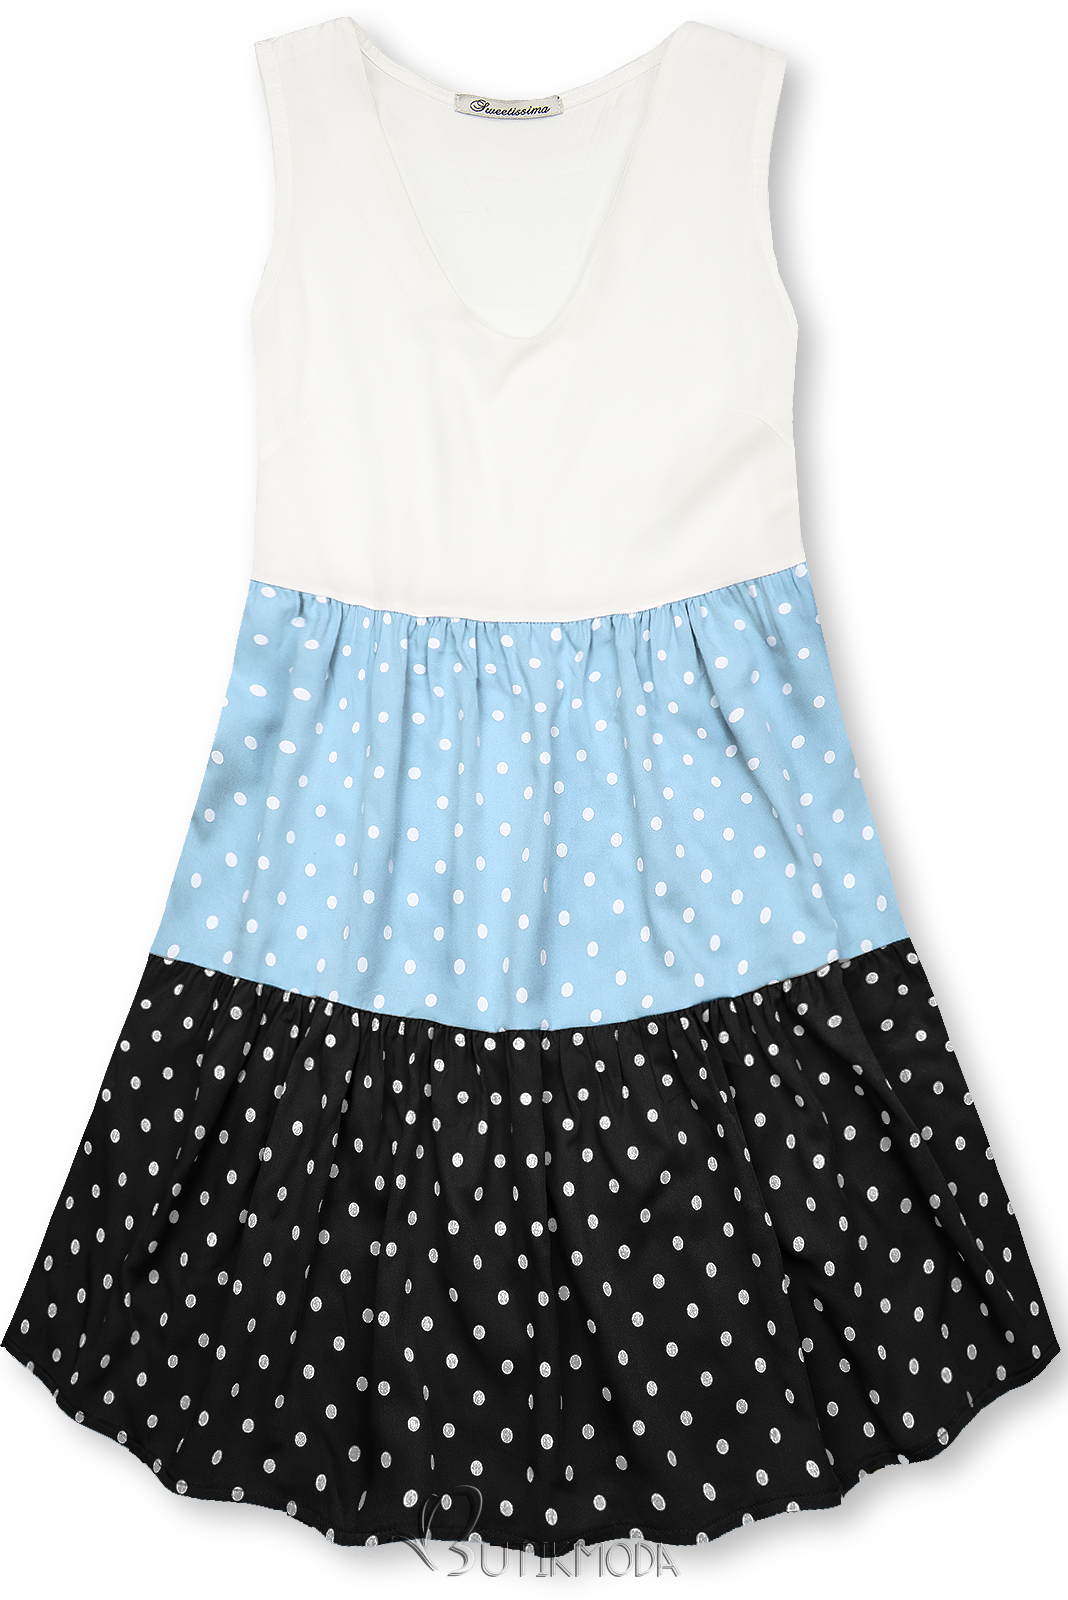 Kleid mit Punktedruck blau/schwarz